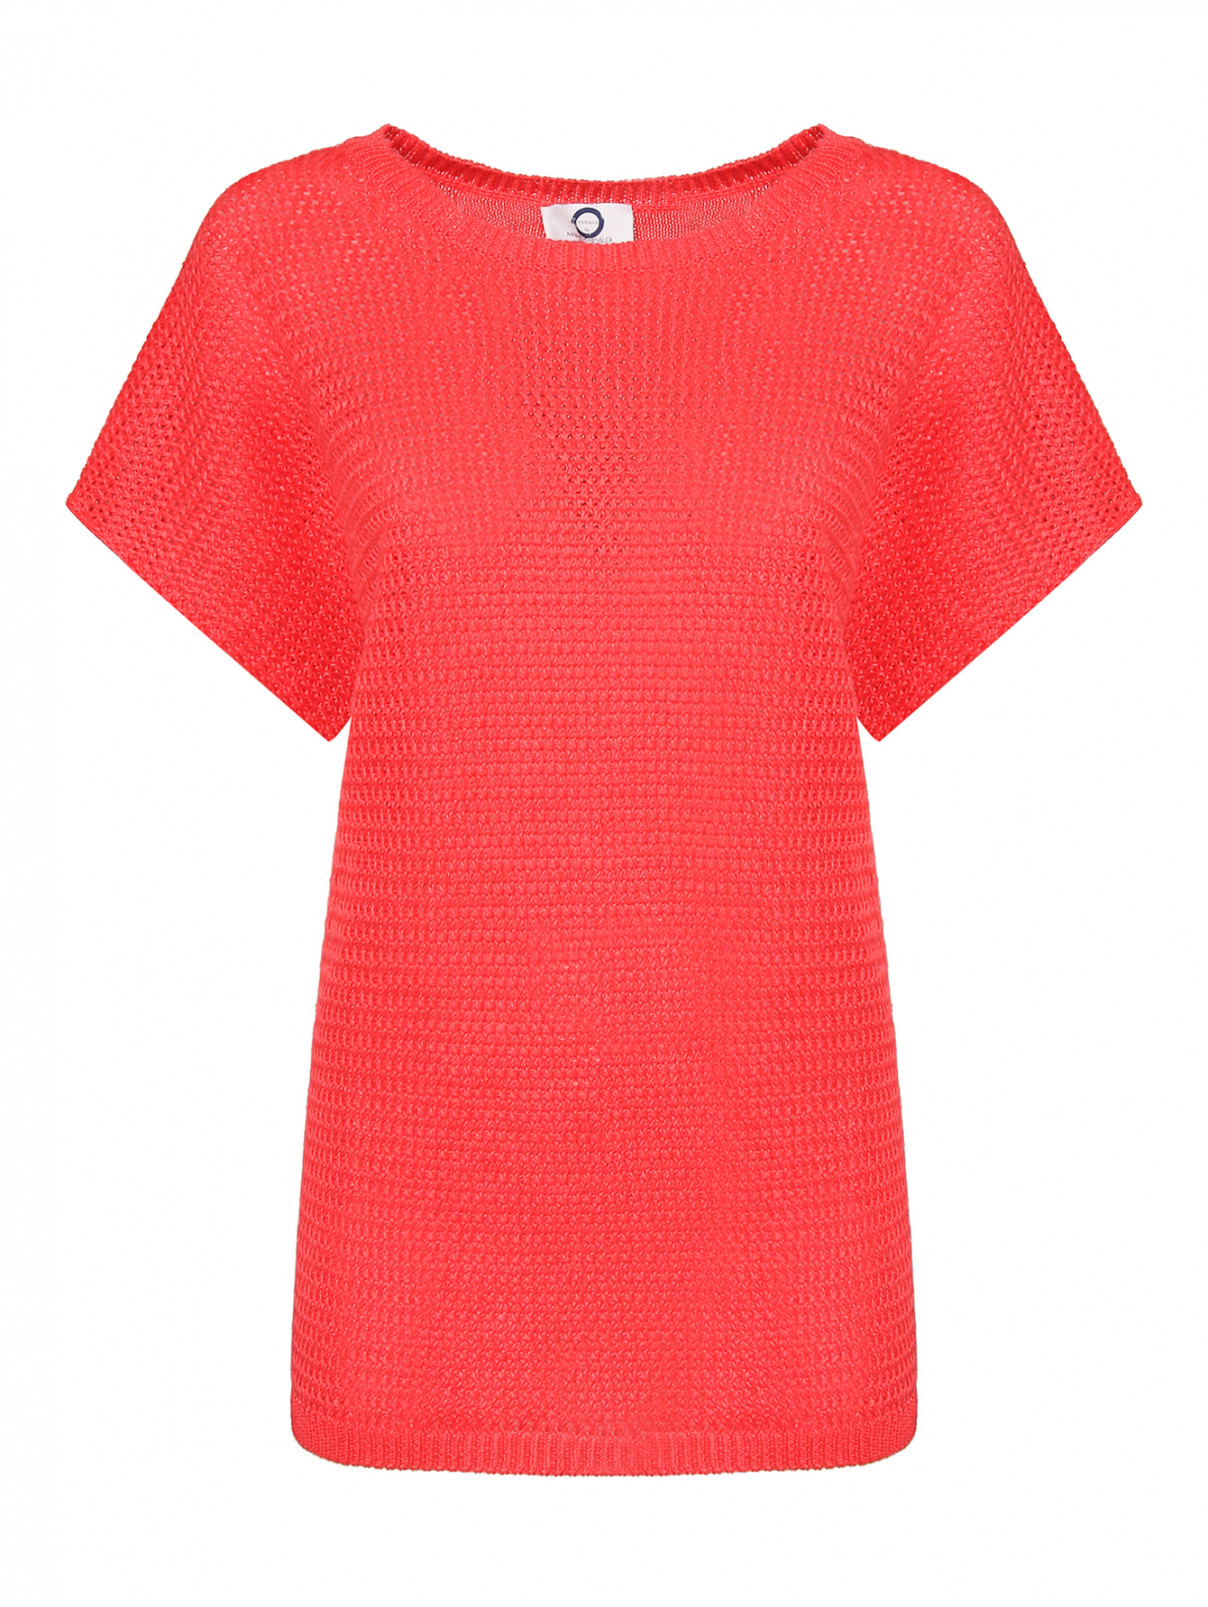 Льняной джемпер фактурной вязки Marina Rinaldi  –  Общий вид  – Цвет:  Красный